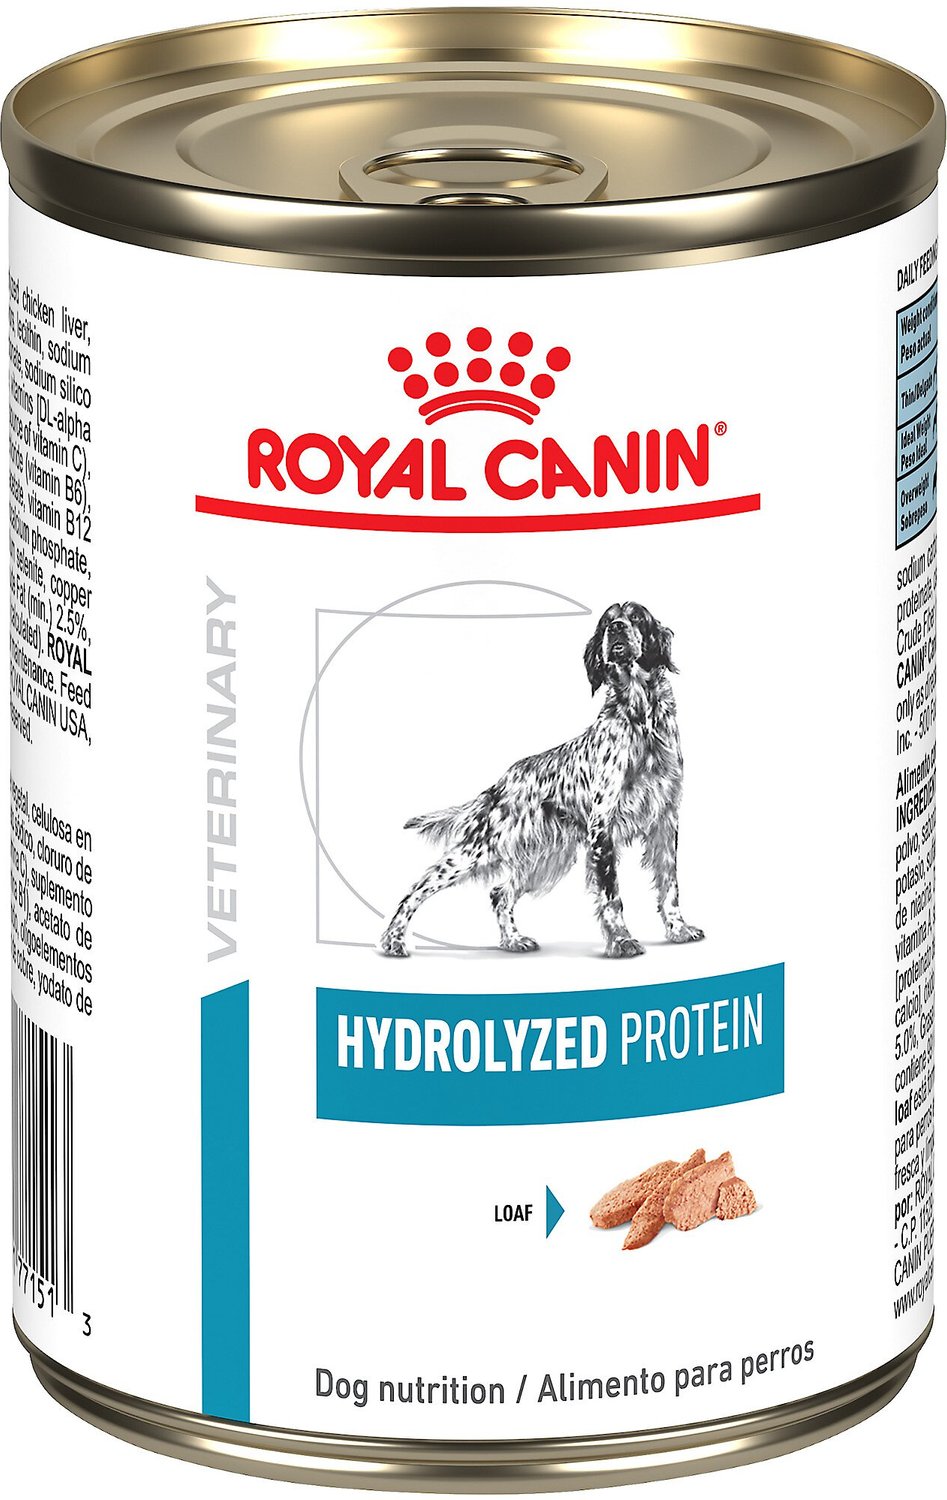 royal canin hydrolyzed protein dog food canada